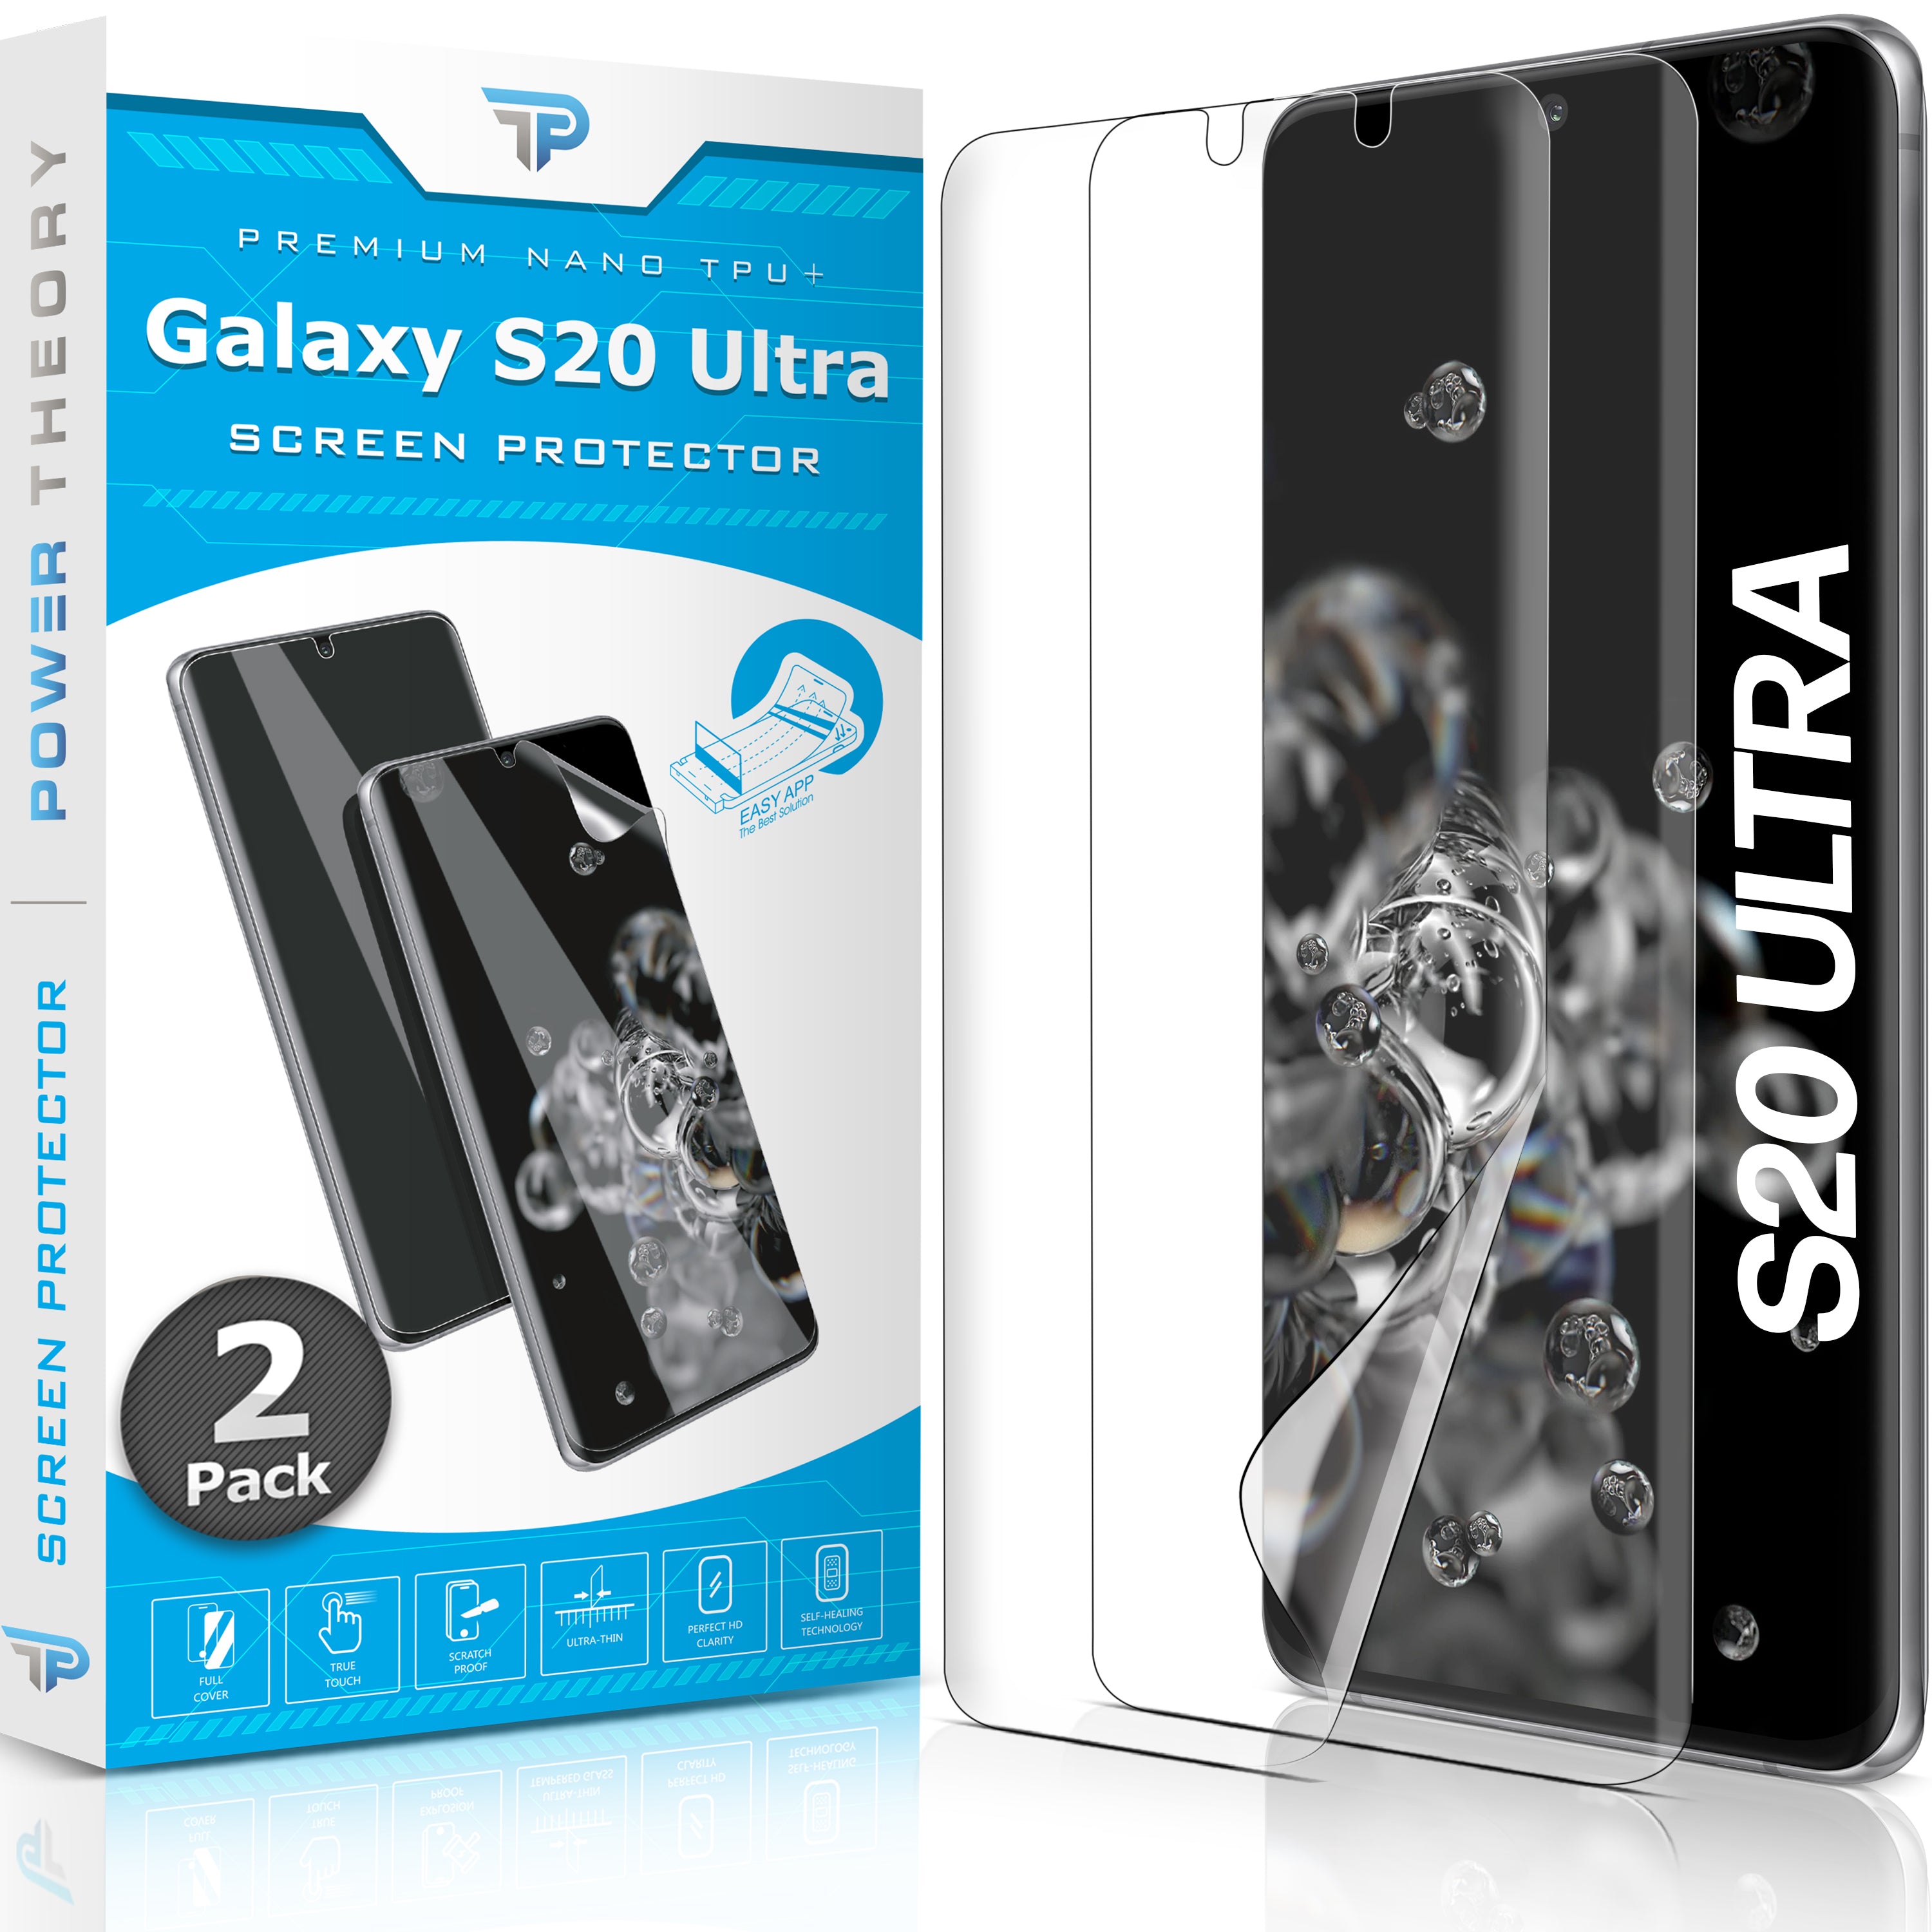 Samsung Galaxy S20 Ultra TPU Anti-Scratch Screen Protector Film [2-Pack]